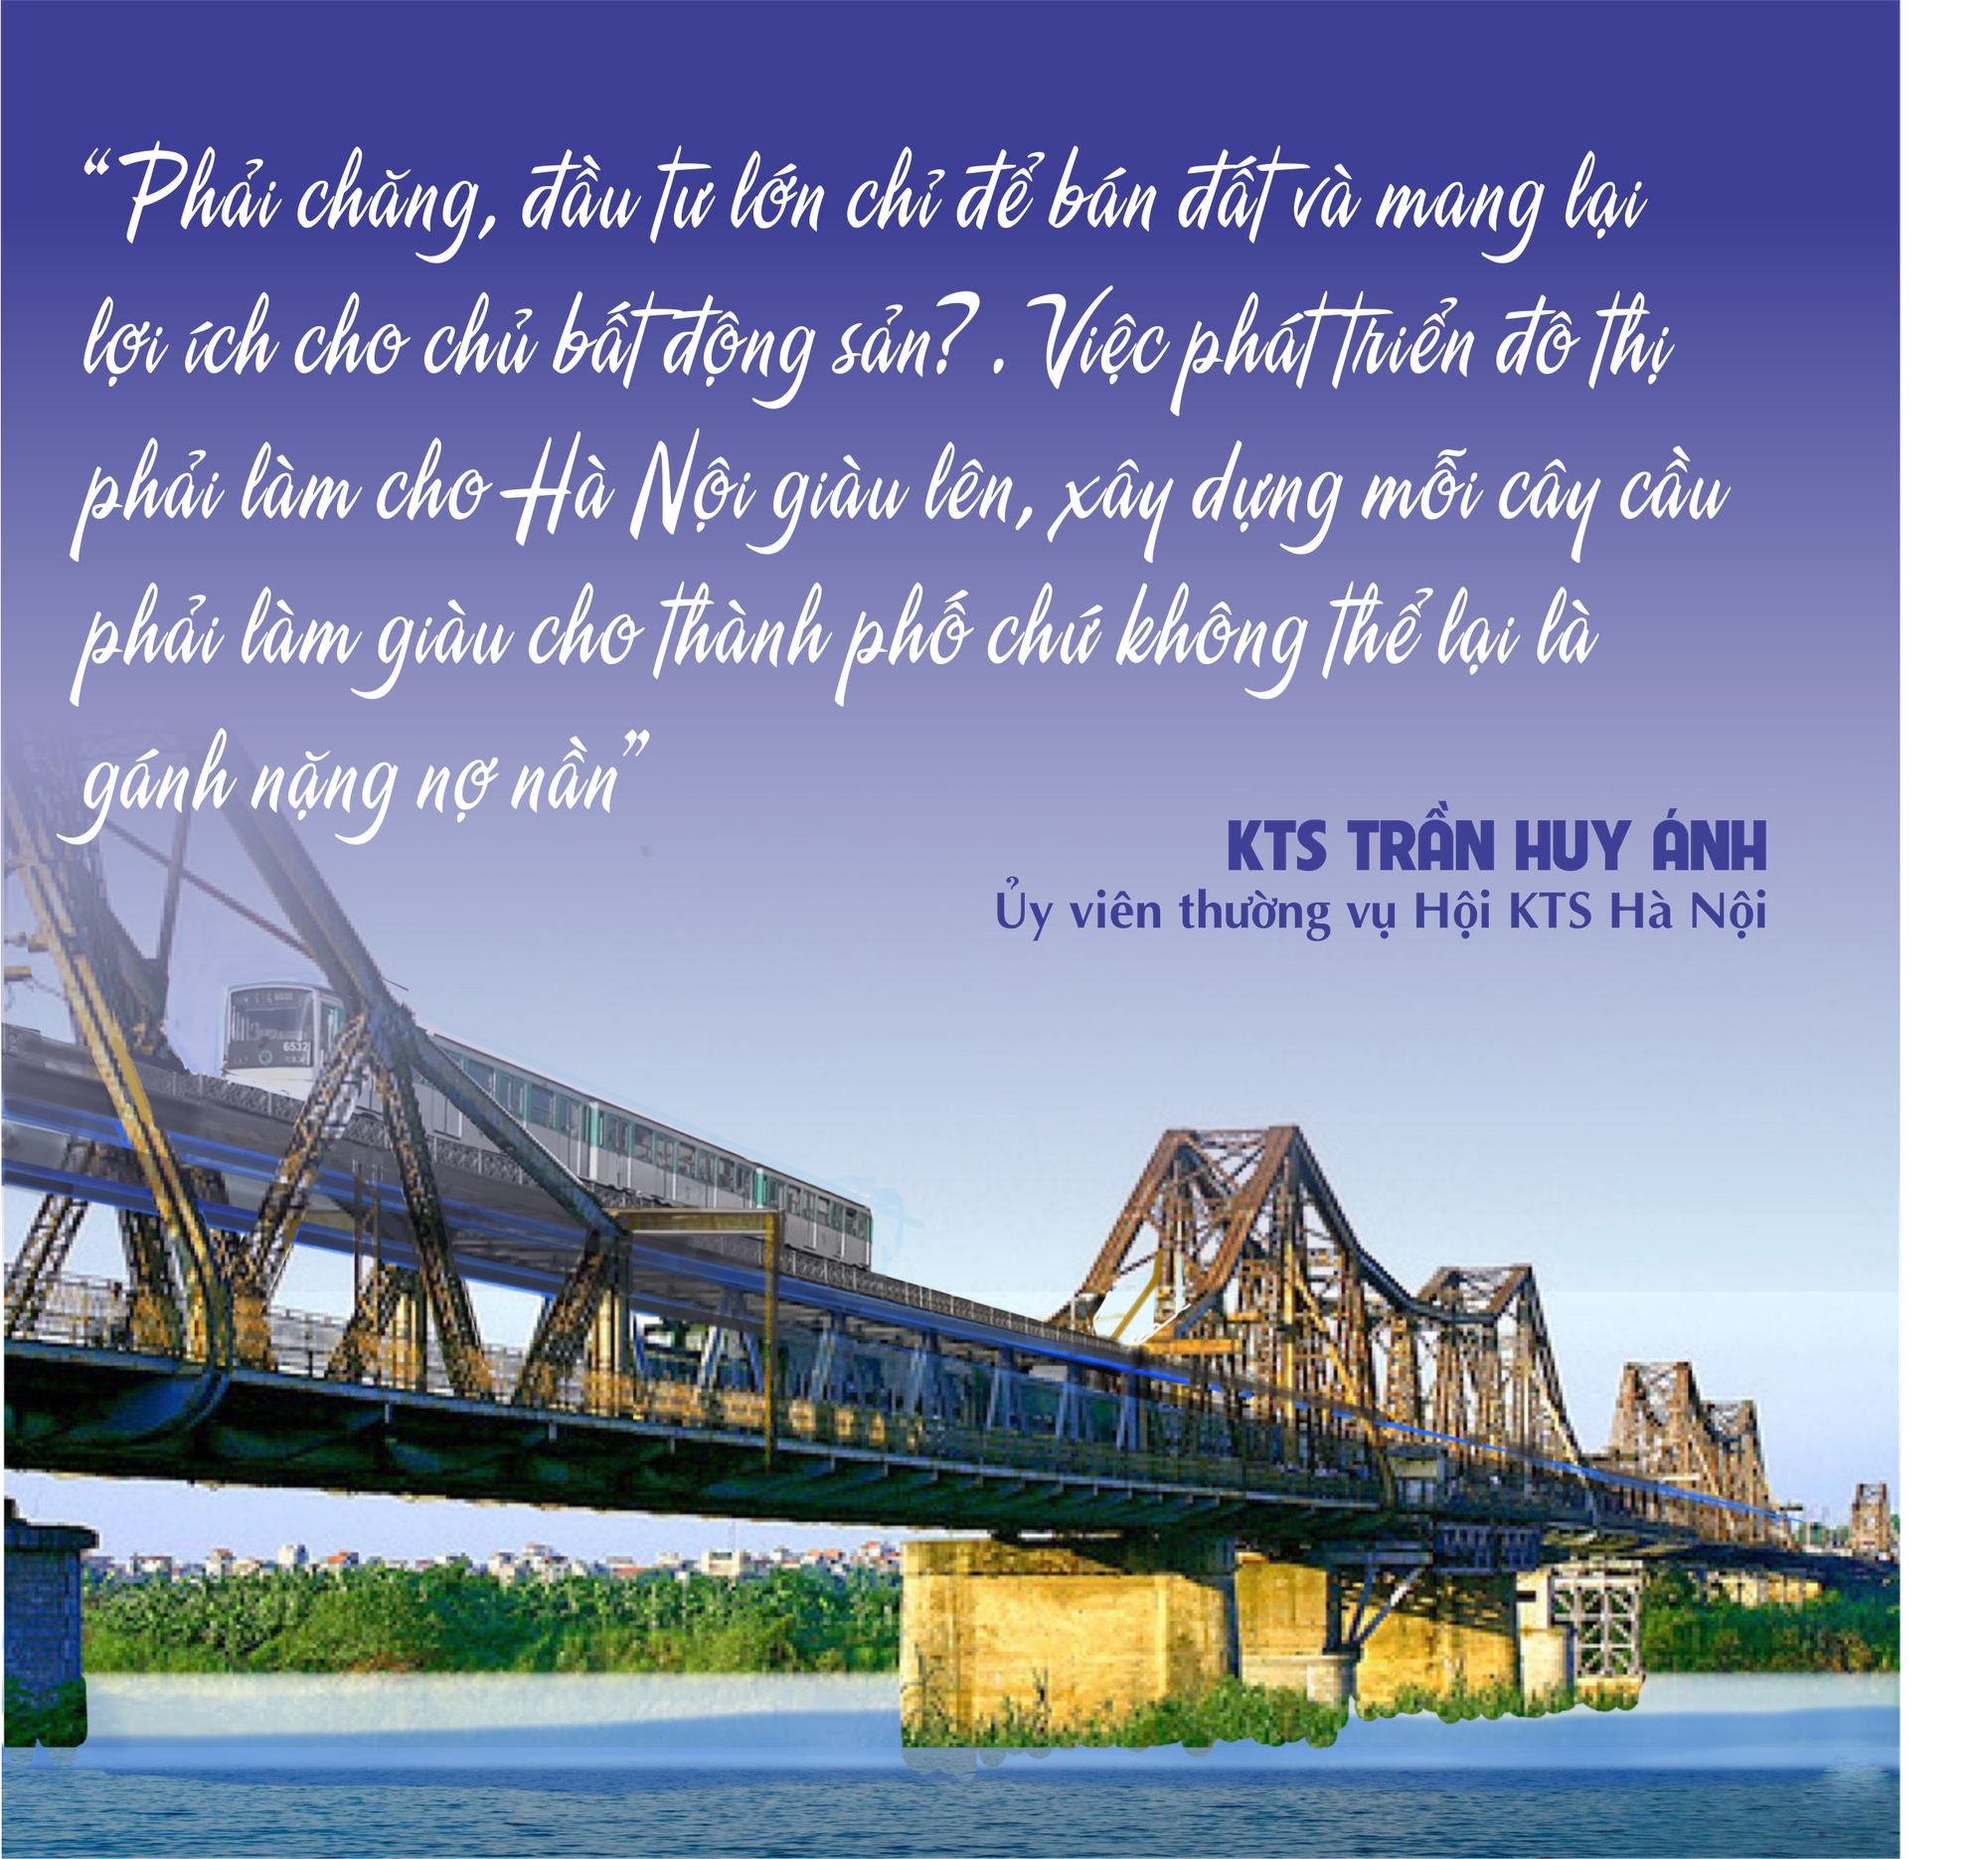 &quot;Giải cứu&quot; cầu Long Biên và ý tưởng làm giàu từ những cầu cầu của Hà Nội - Ảnh 6.